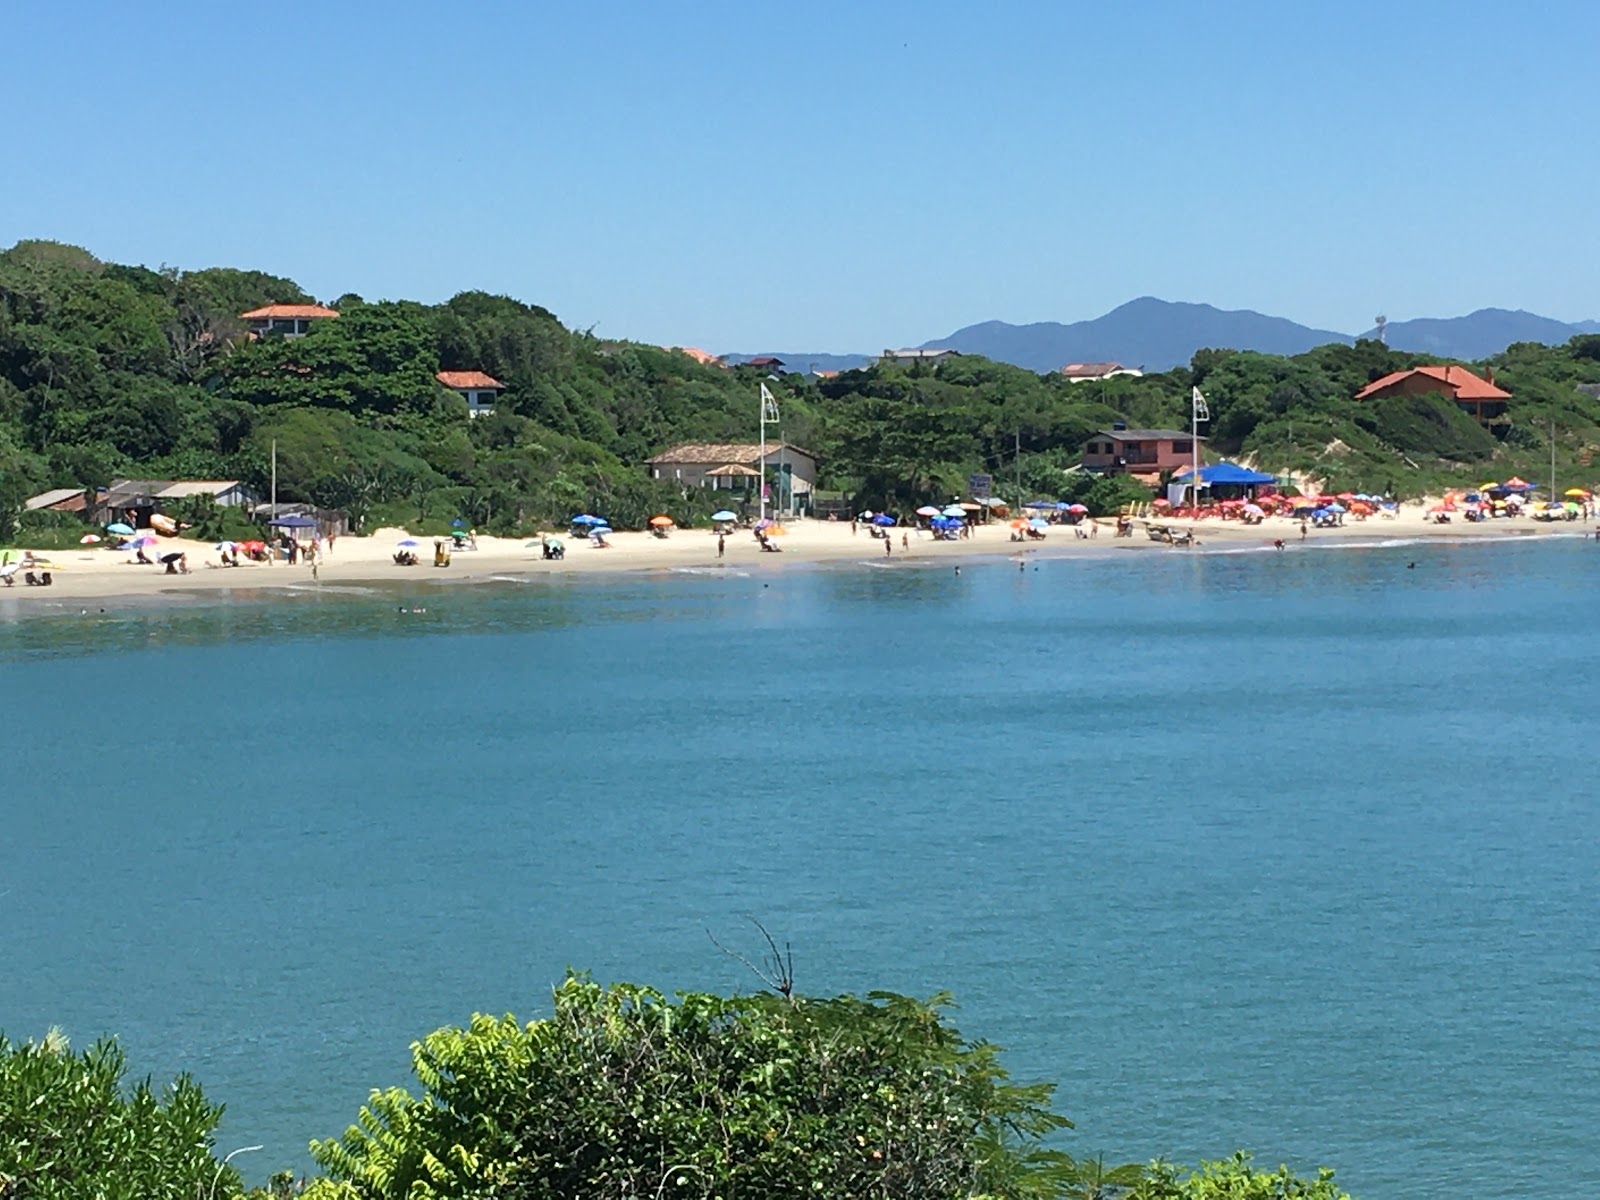 Foto af Praia da Pinheira II - populært sted blandt afslapningskendere